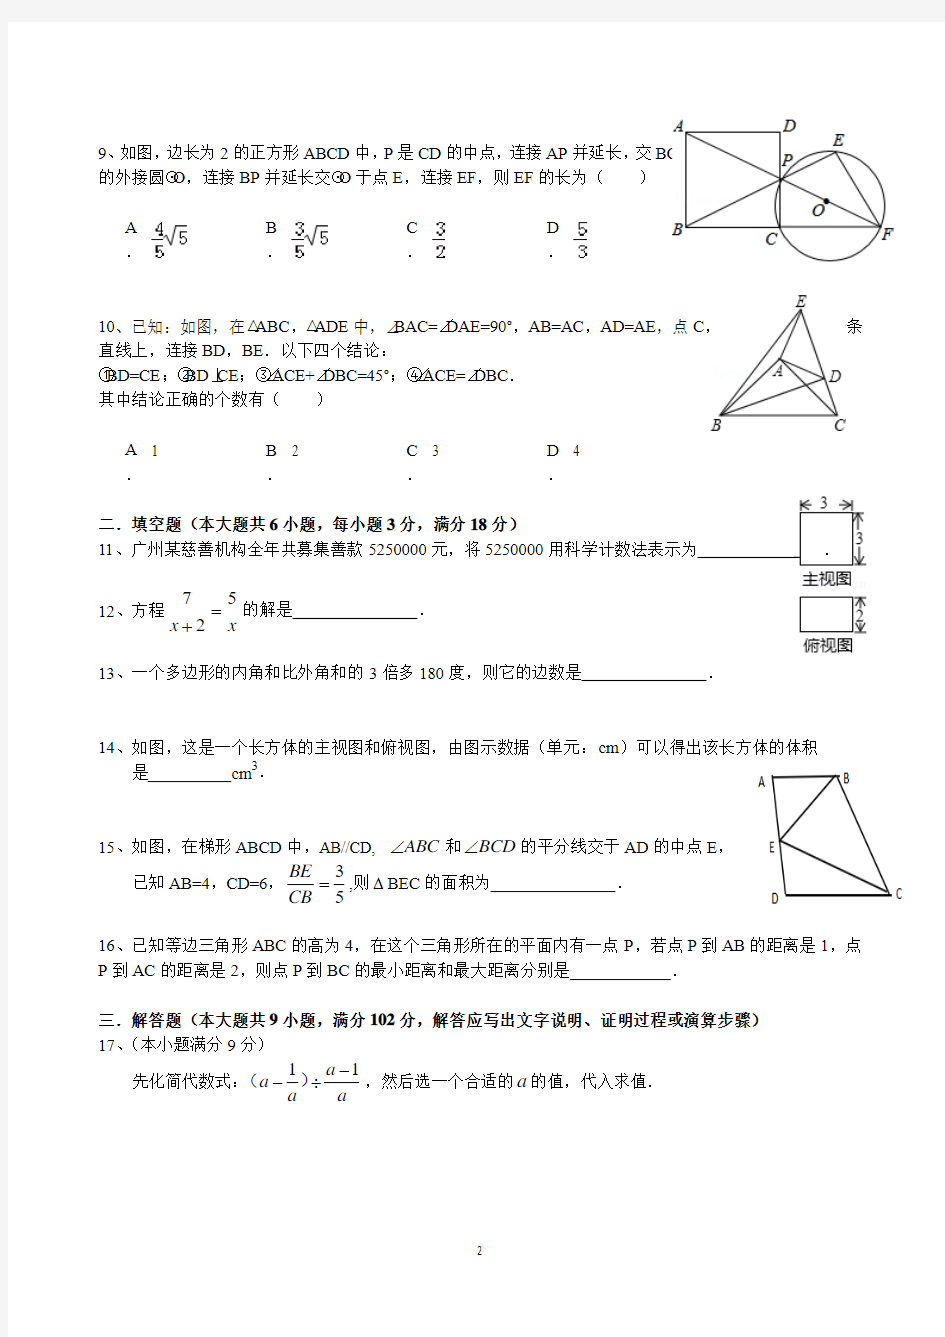 2015年广州市第三中学初中毕业班综合测试(一)数学